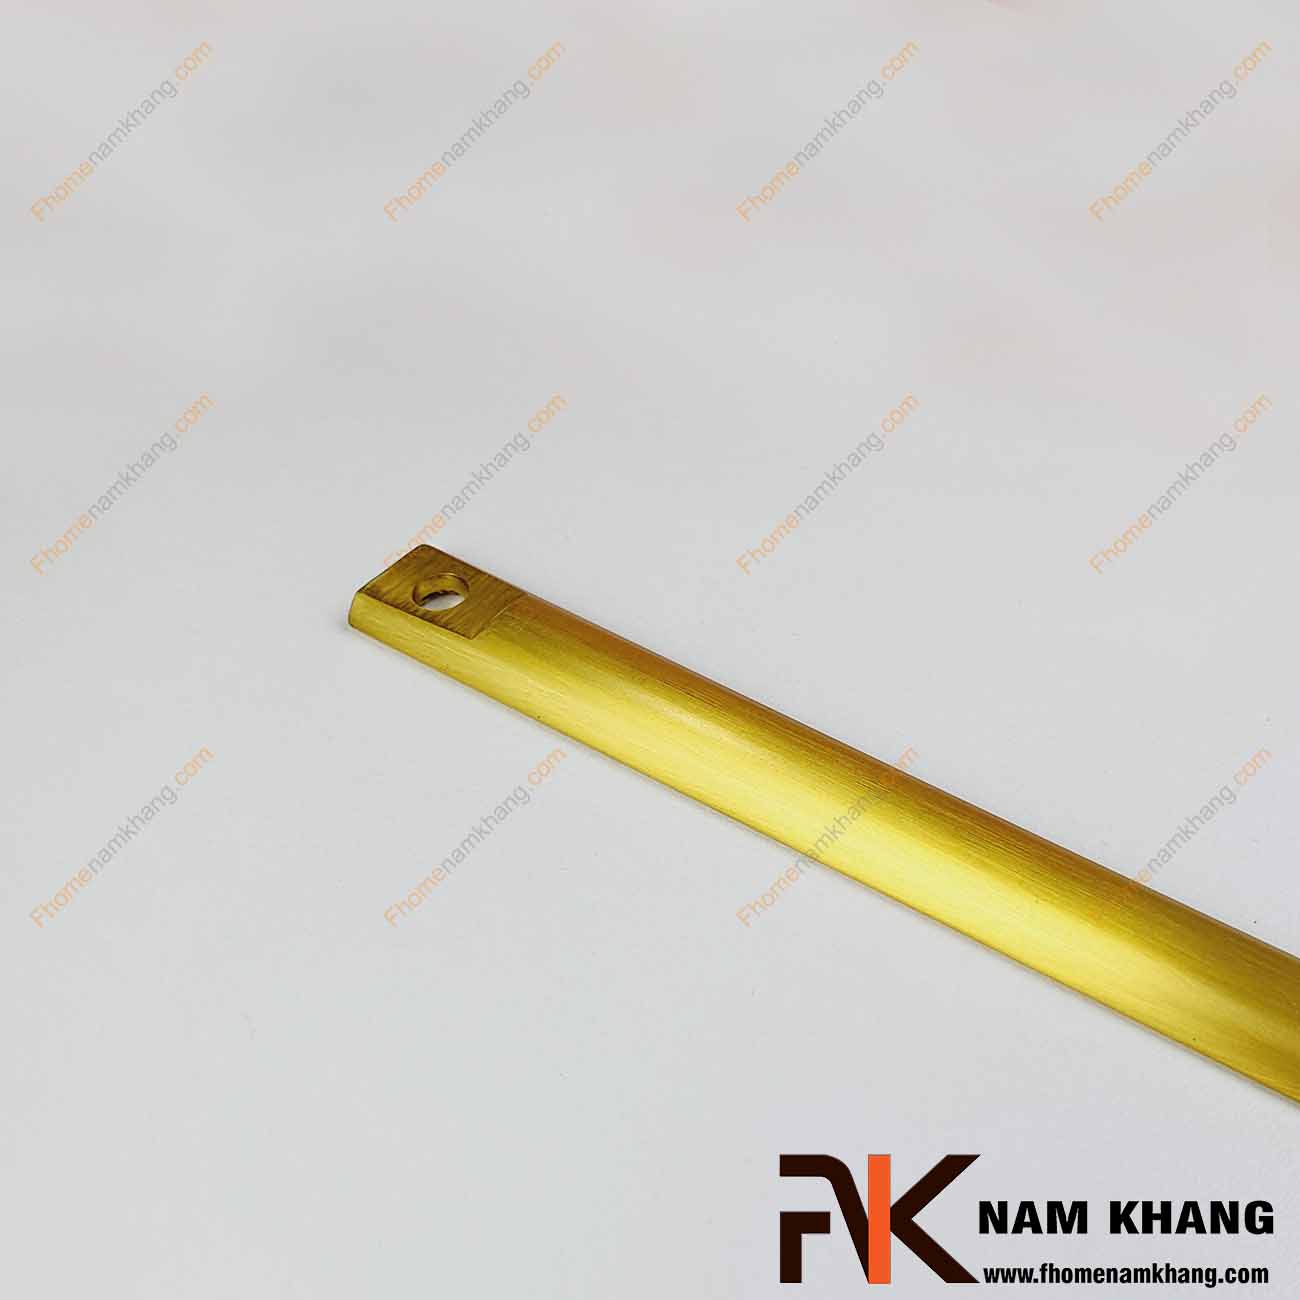 Thanh cài clemon NK187 được sản xuất từ chất liệu đồng cao cấp